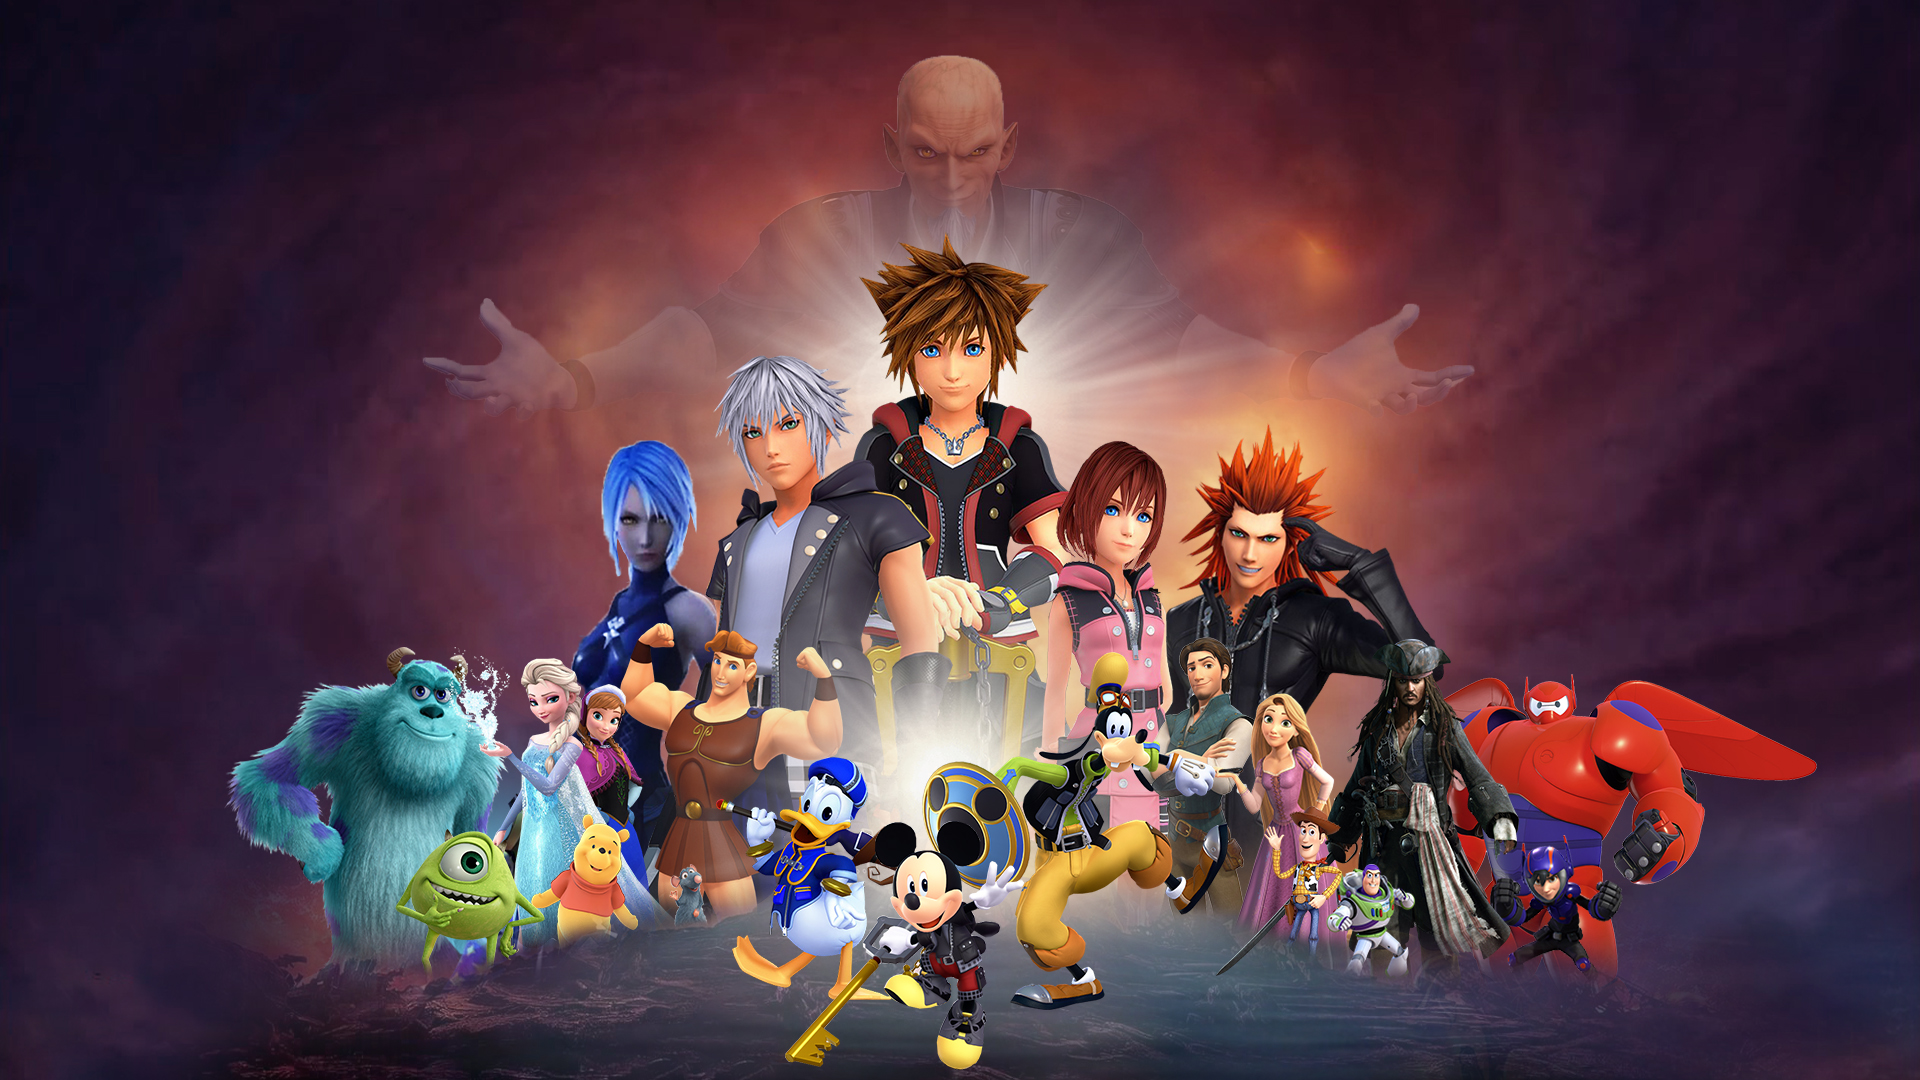 Kingdom Hearts III - Wikipedia - wide 3